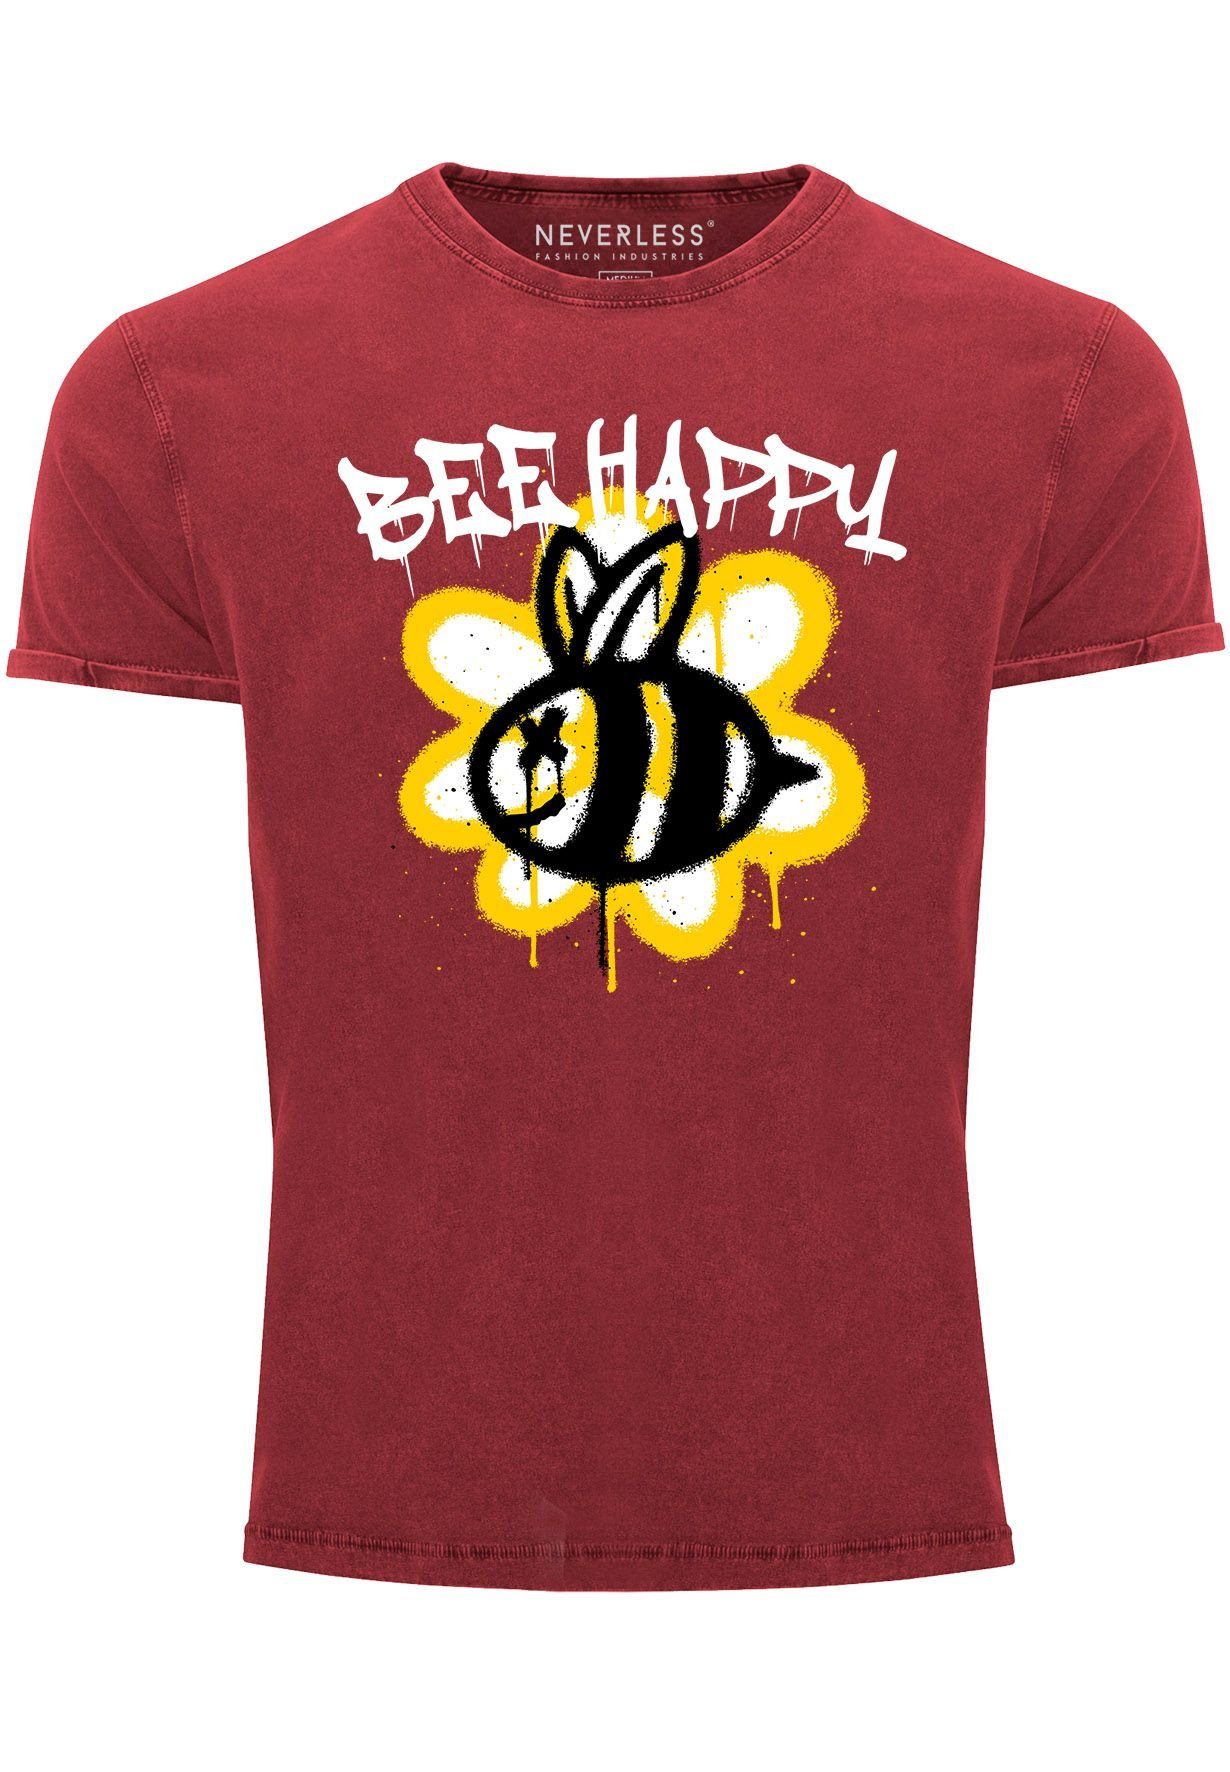 Neverless Print-Shirt Herren Vintage-Shirt Aufdruck Bee Happy Biene Blume Graffiti Schriftzu mit Print rot